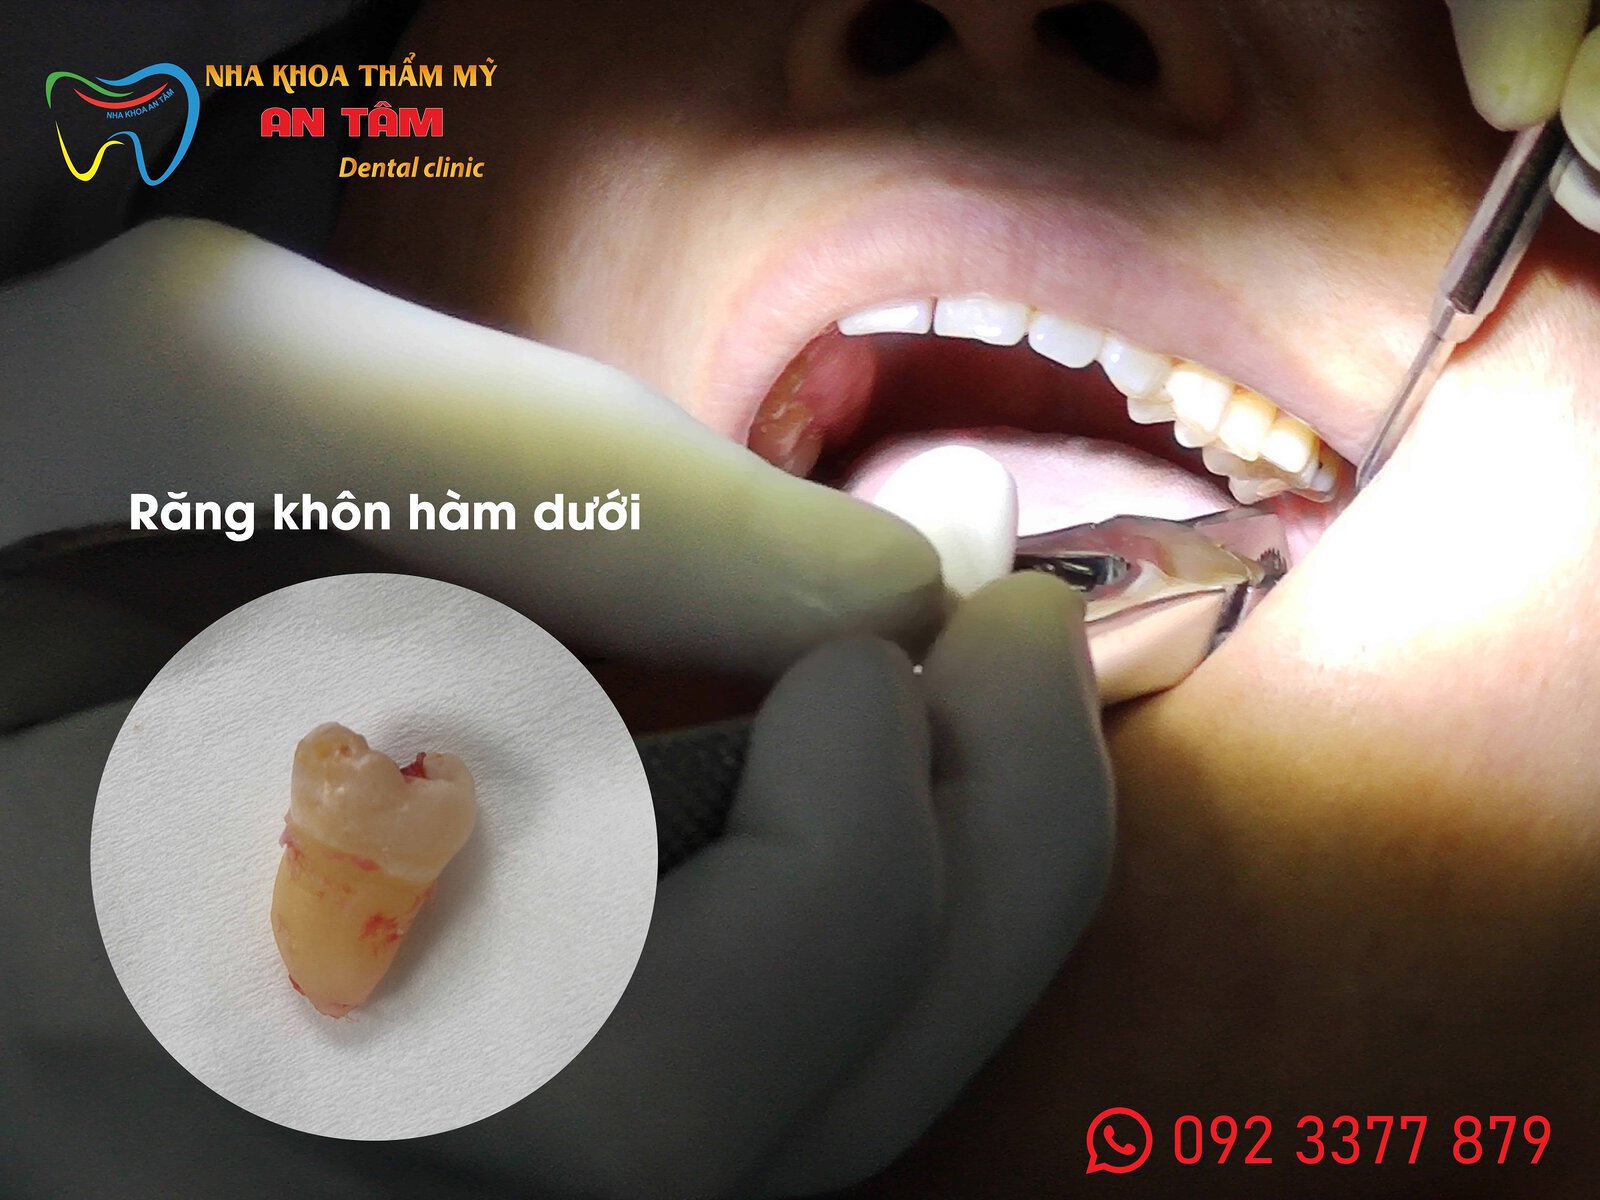 Hình ảnh khách nhổ răng khôn hàm dưới không đau tại Nha khoa An Tâm quận Gò Vấp